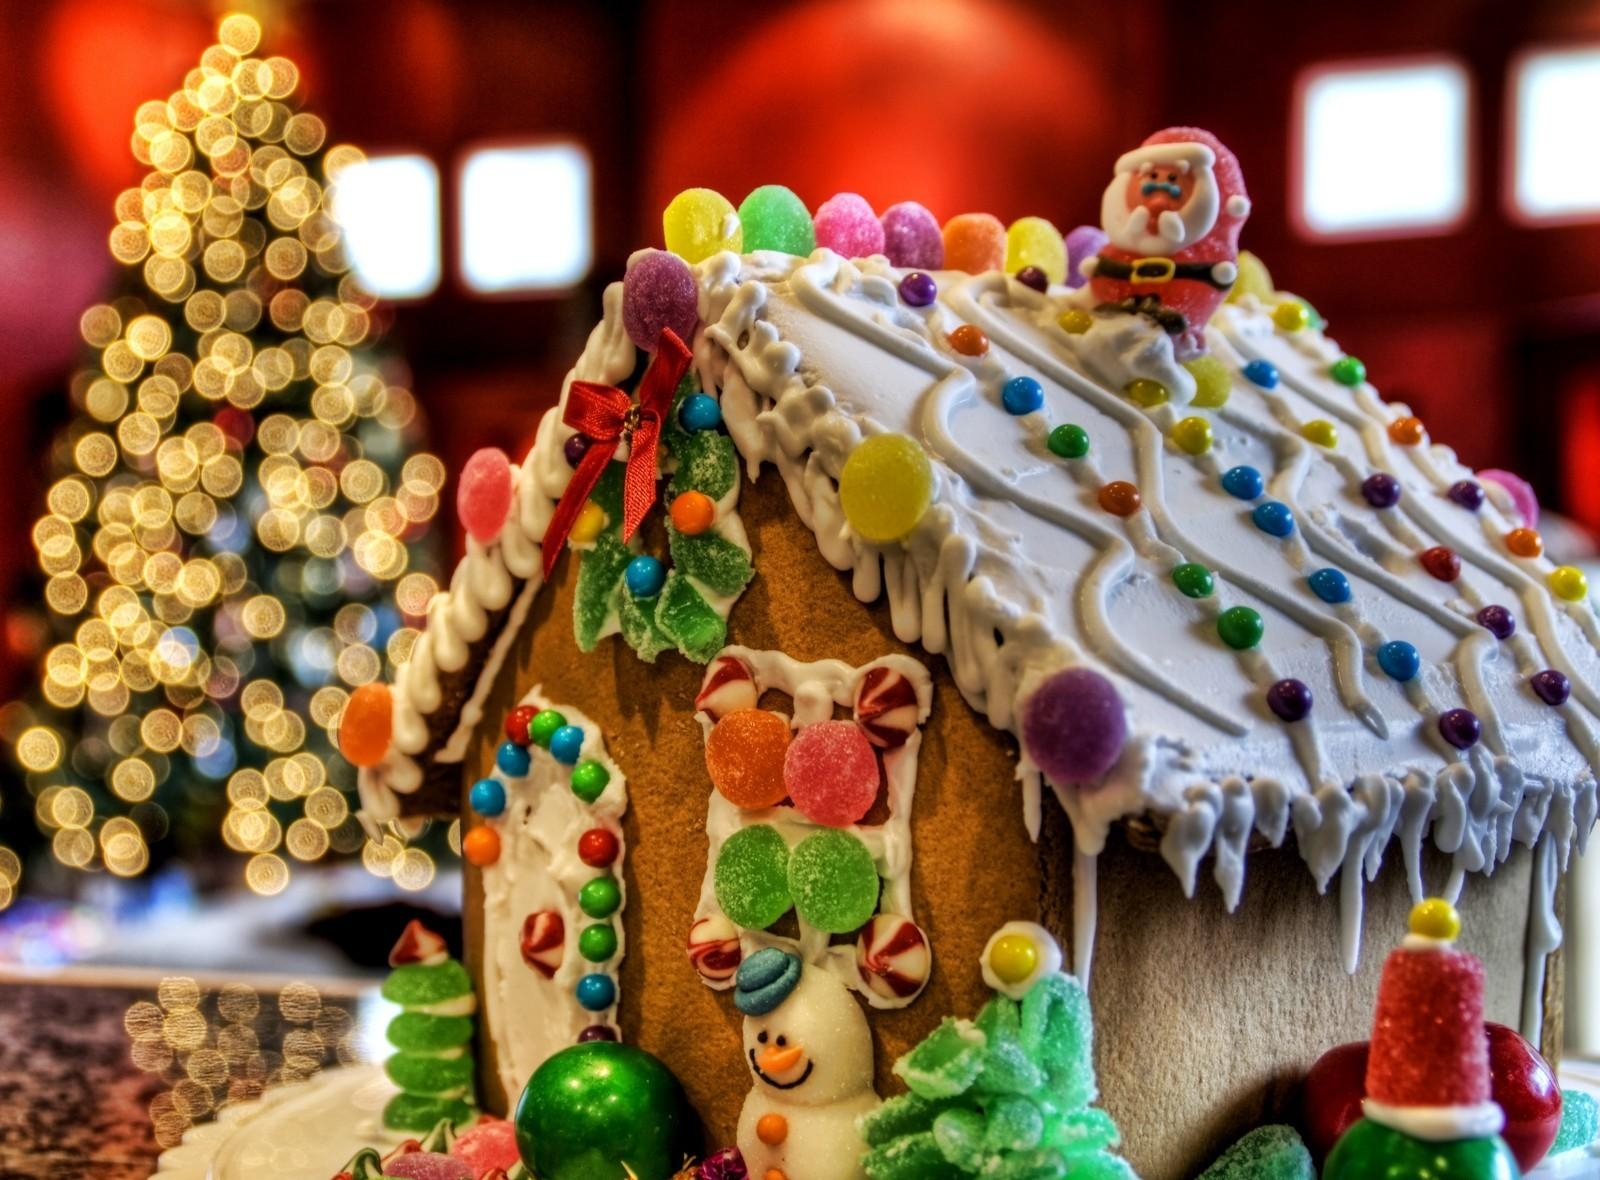 festive treat, santa claus, snowman, house HD Wallpaper for Phone